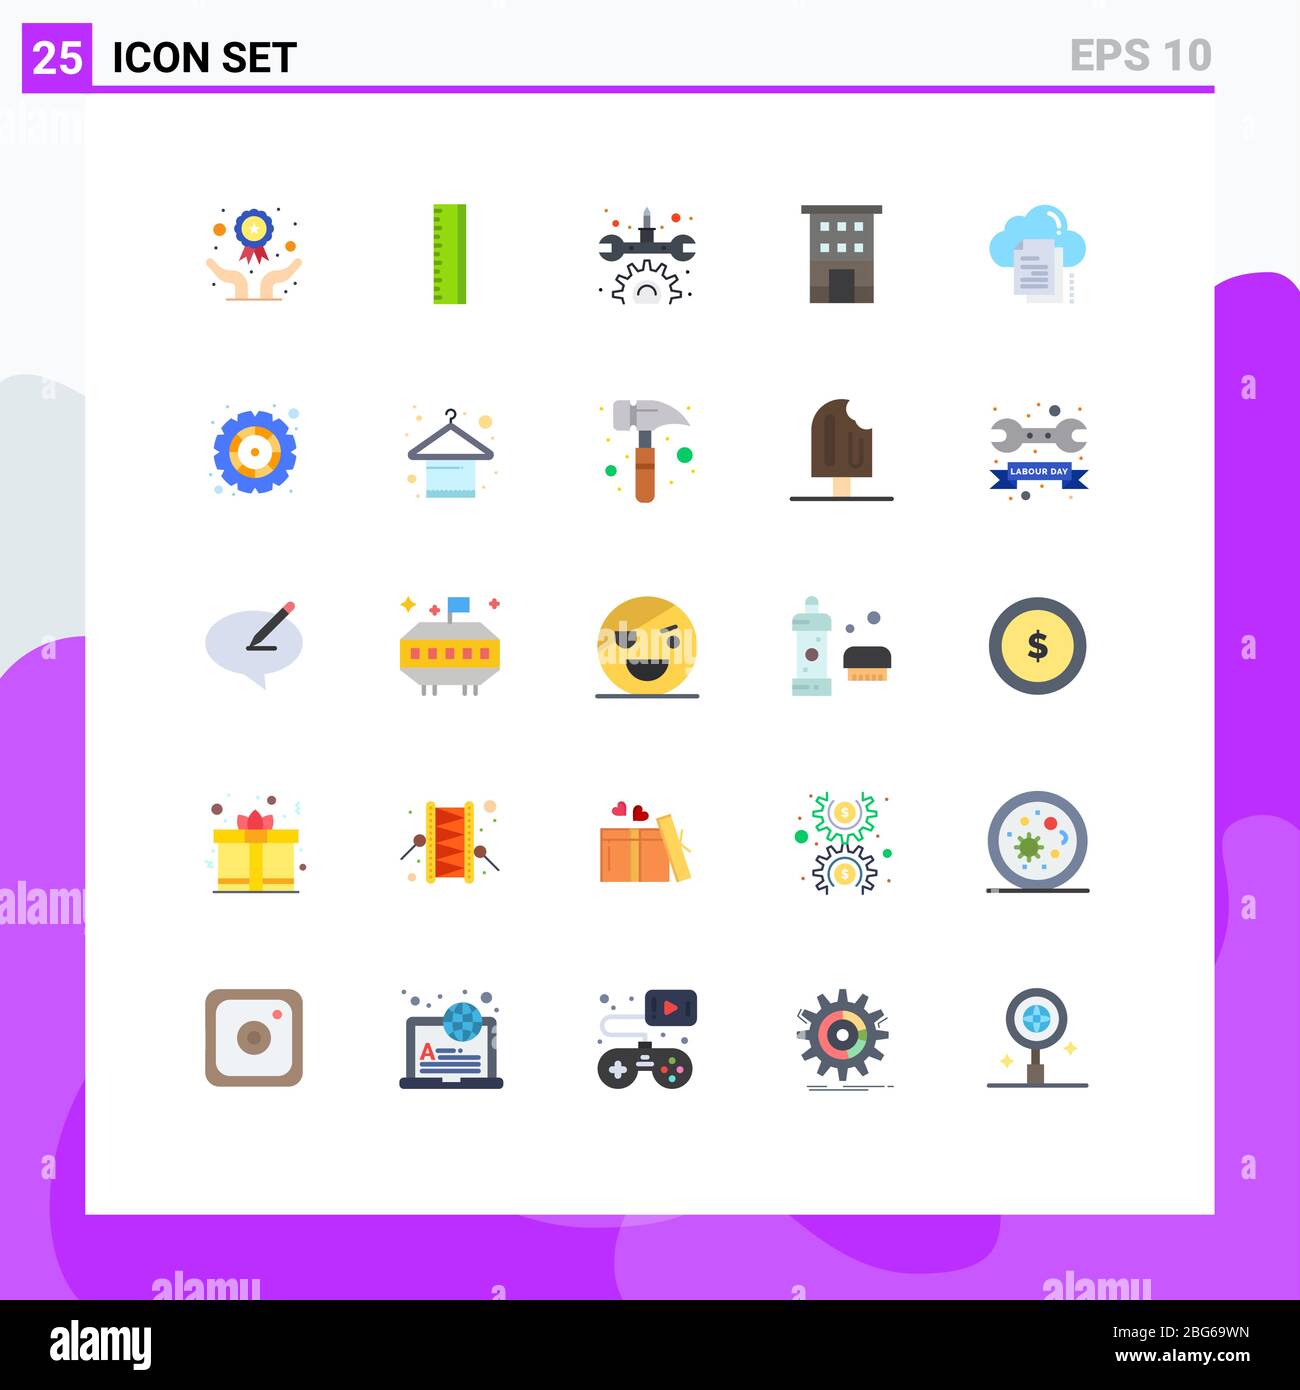 Set di 25 icone moderne dell'interfaccia utente simboli per copia, dati, manutenzione, negozi, elementi di progettazione vettoriale editabili Illustrazione Vettoriale